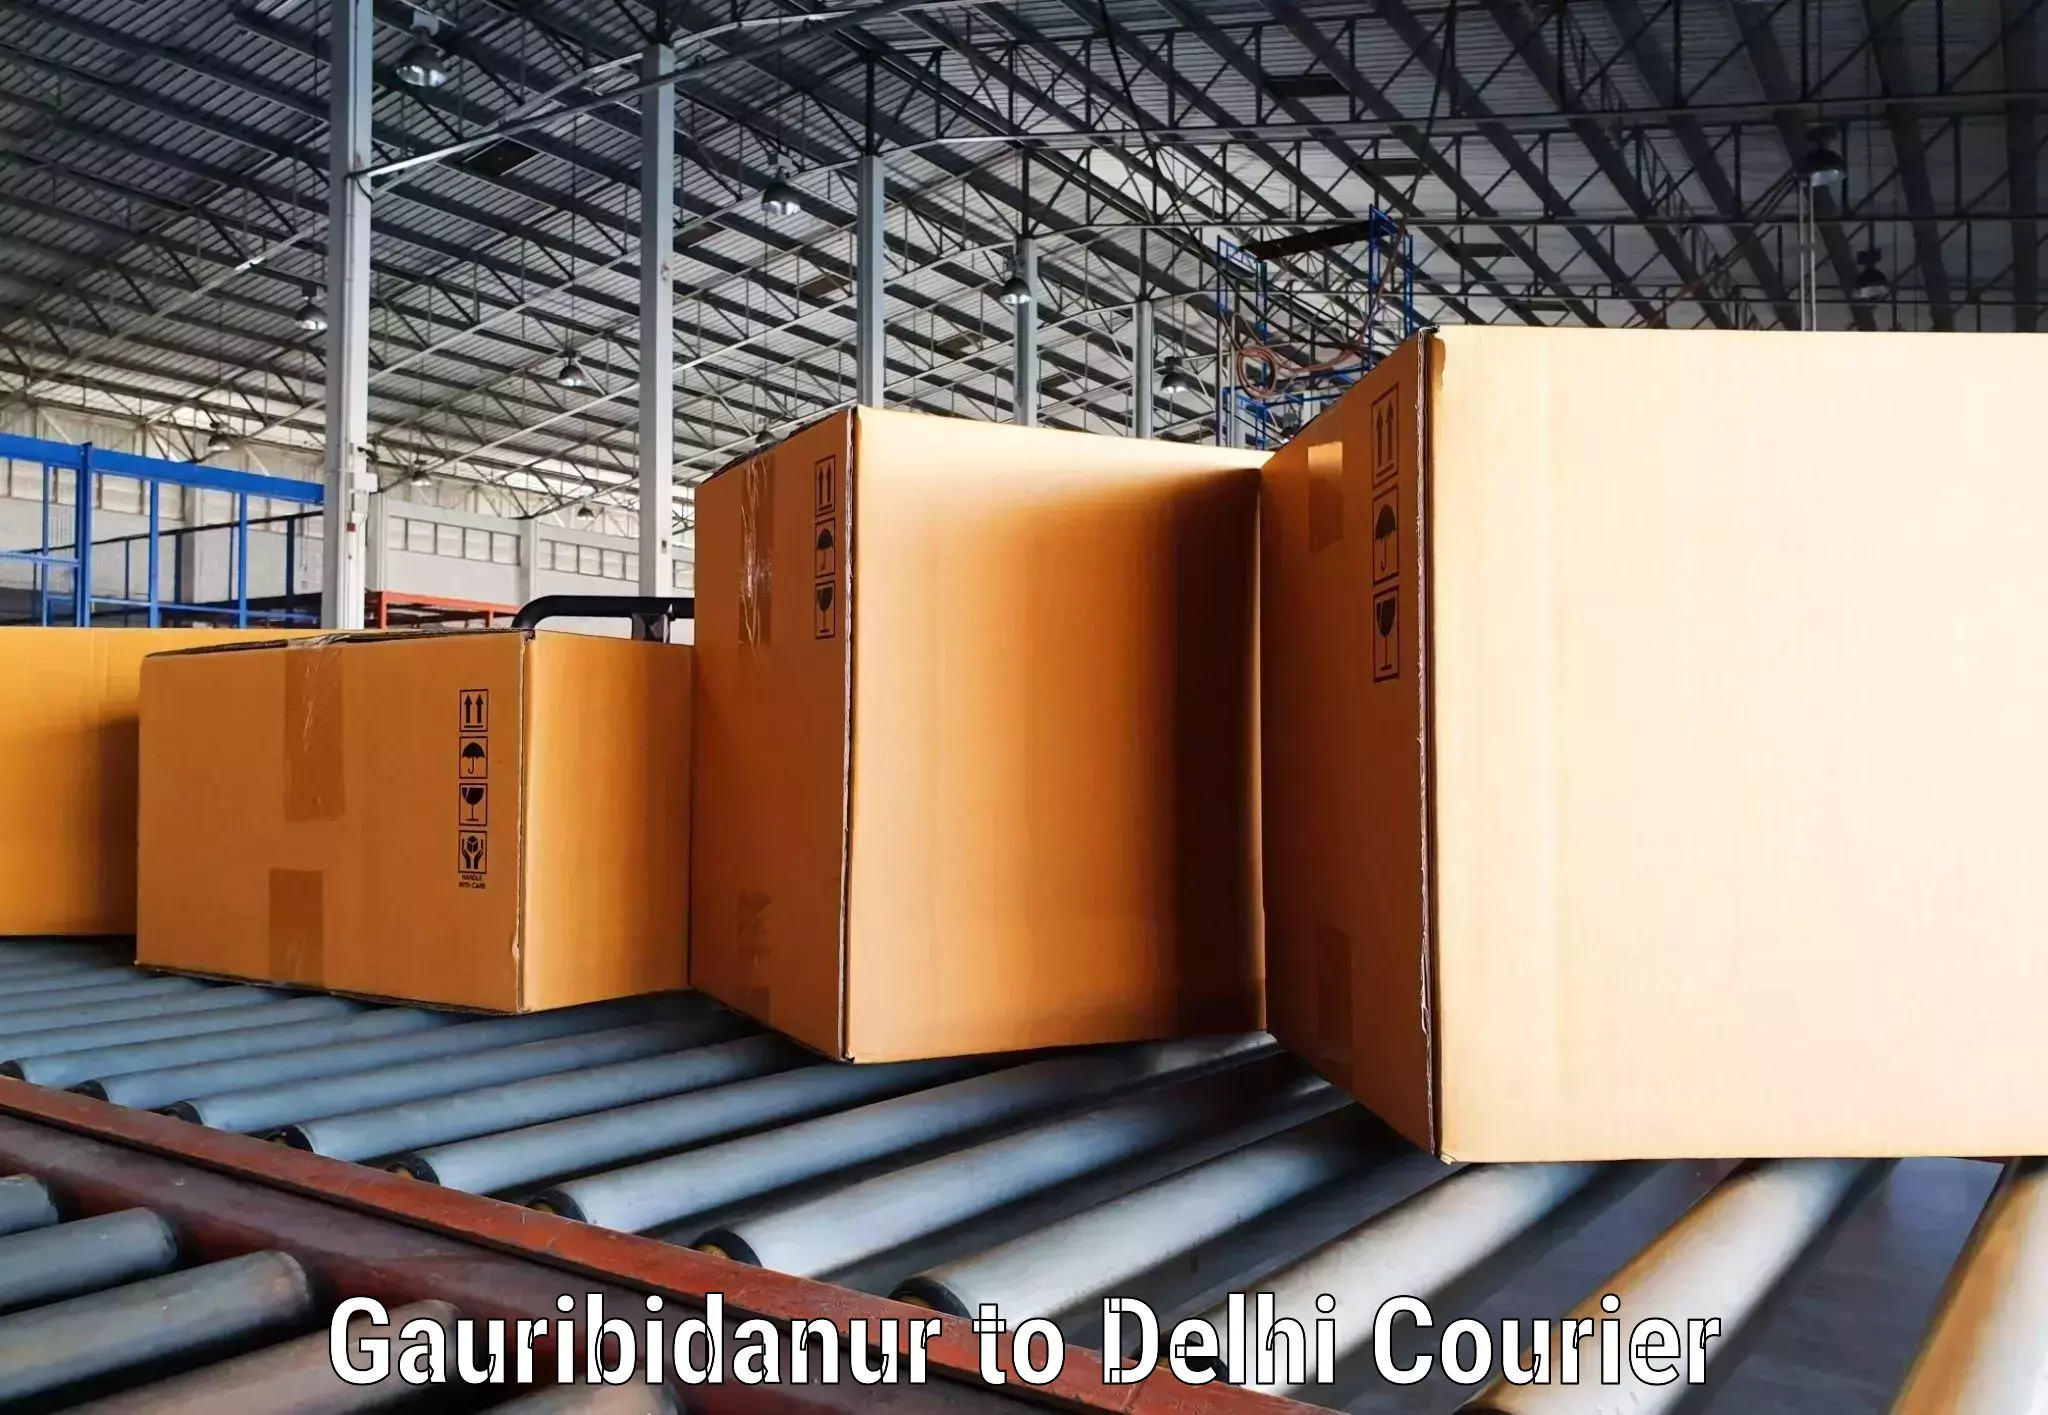 Quick dispatch service Gauribidanur to IIT Delhi